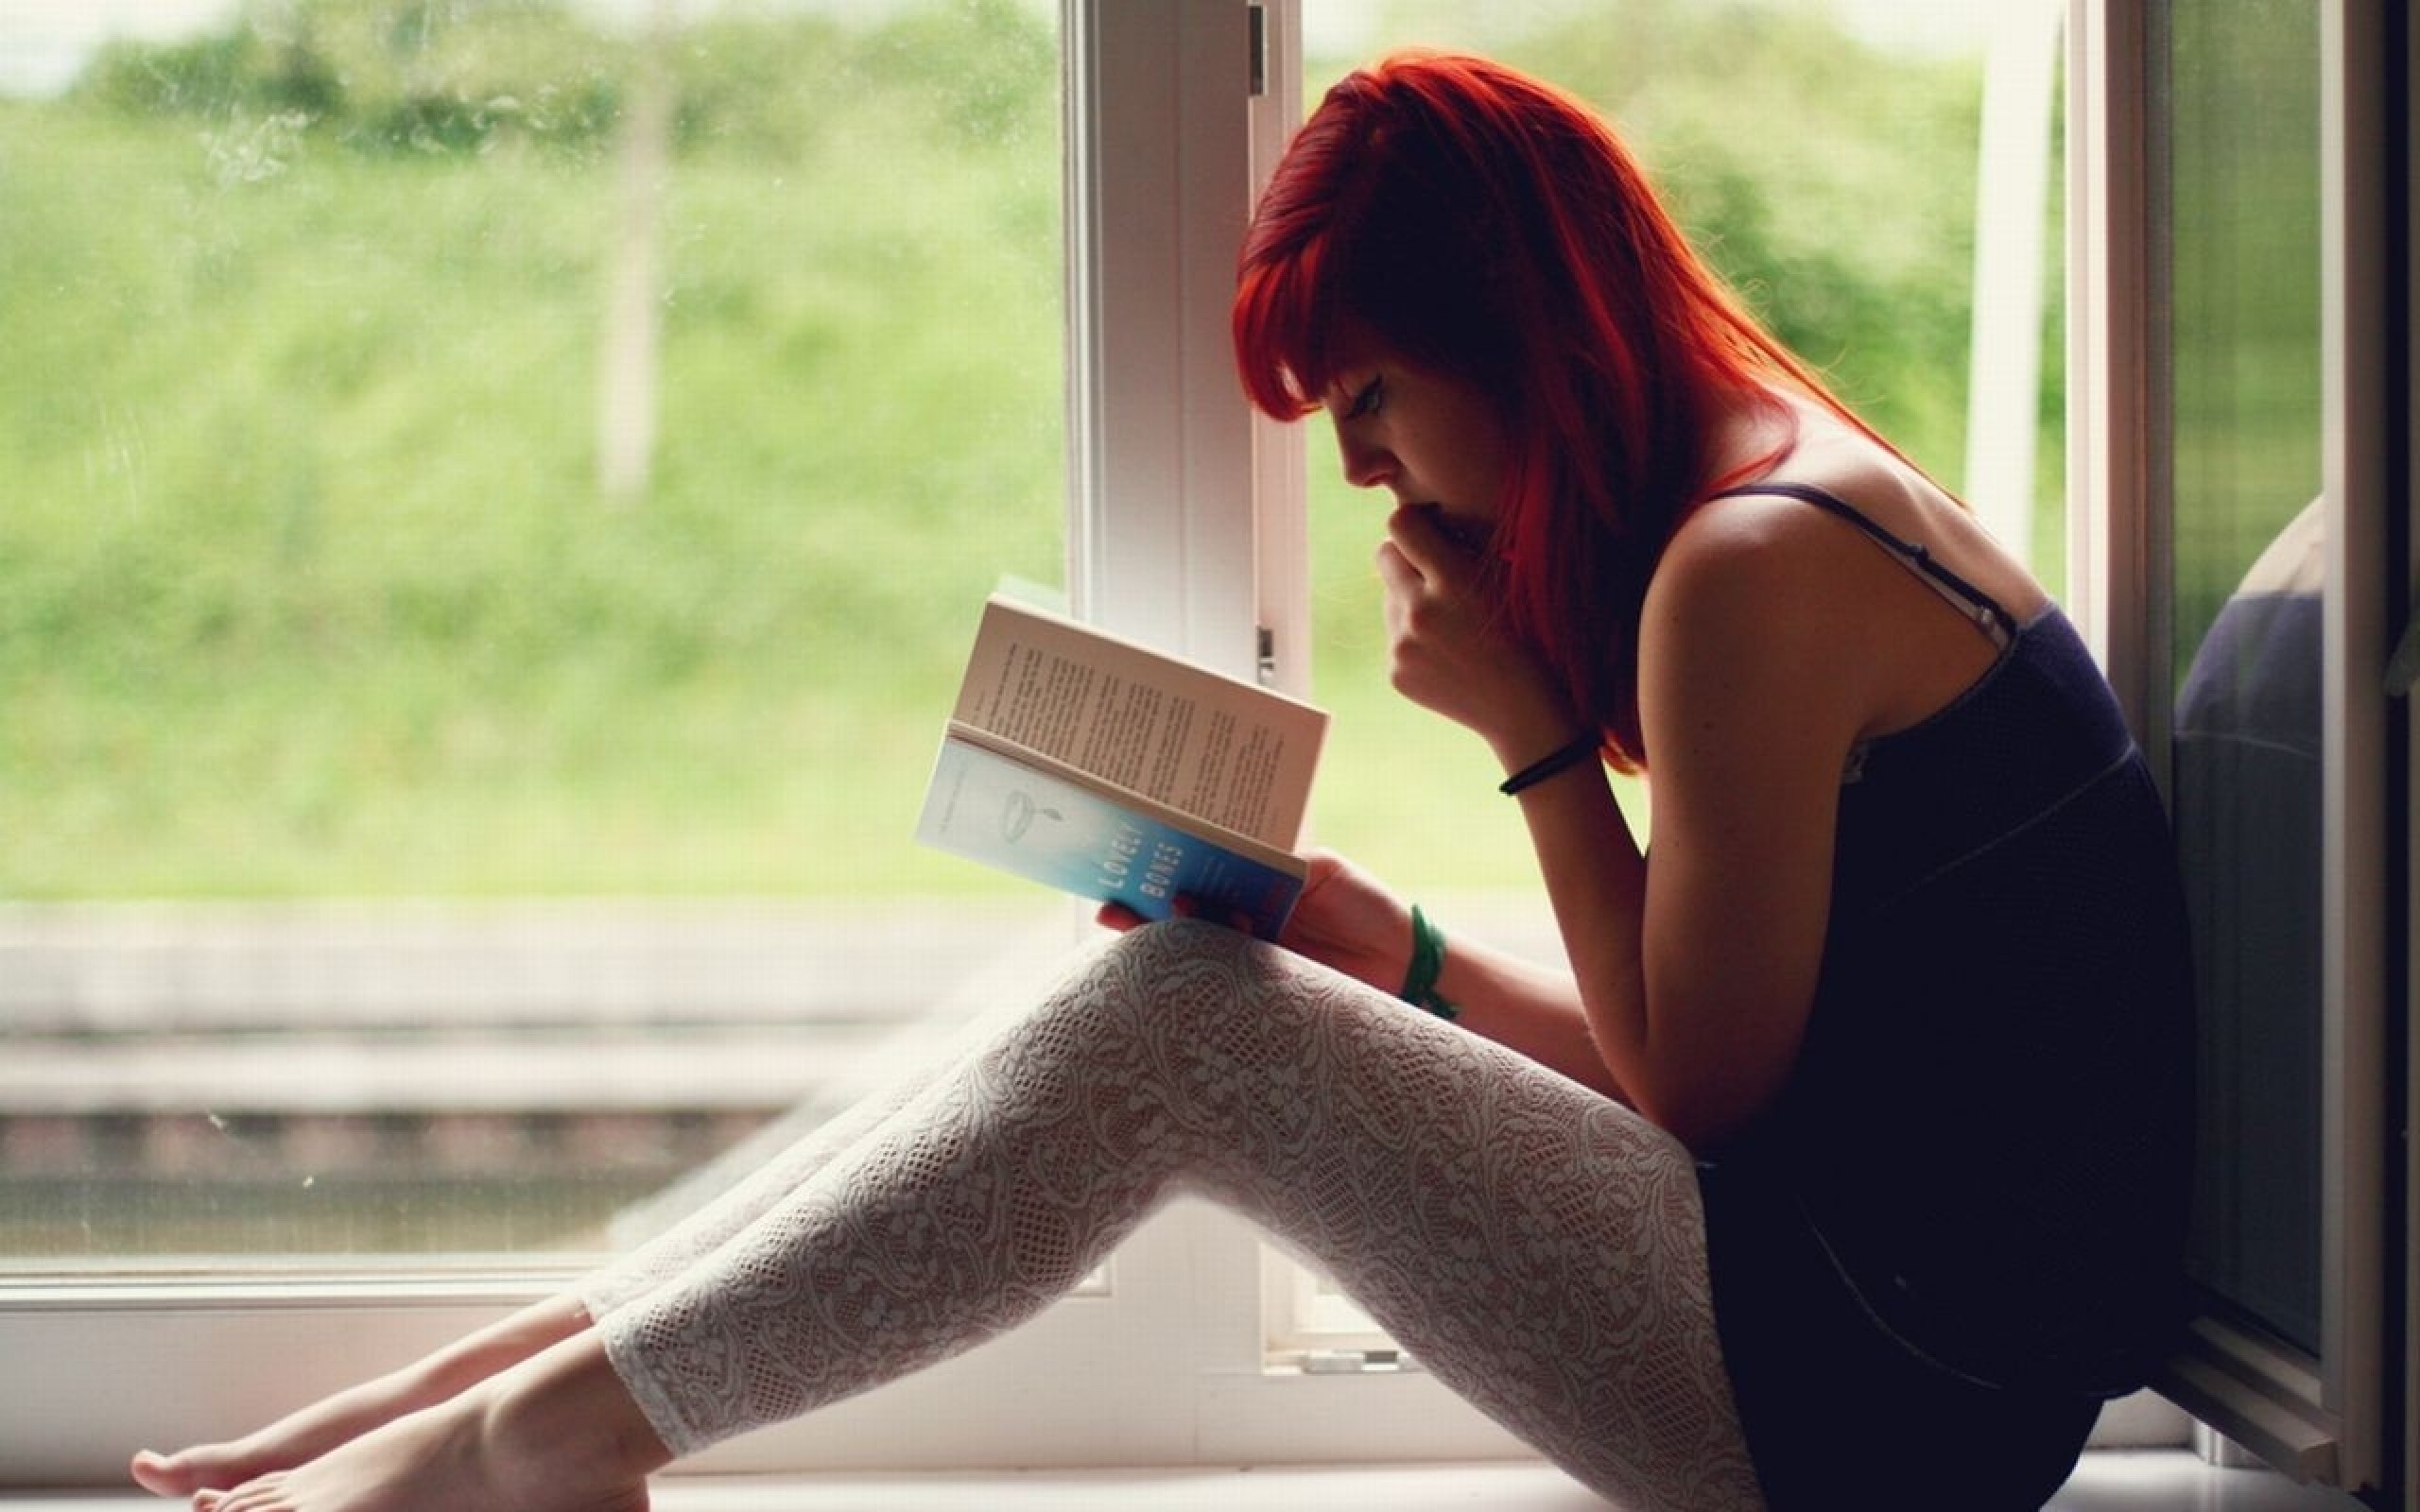 Посмотри на нее читать. Девушка на подоконнике. Девушка с книжкой на подоконнике. Девушка с книгой. Рыжая девушка у окна.